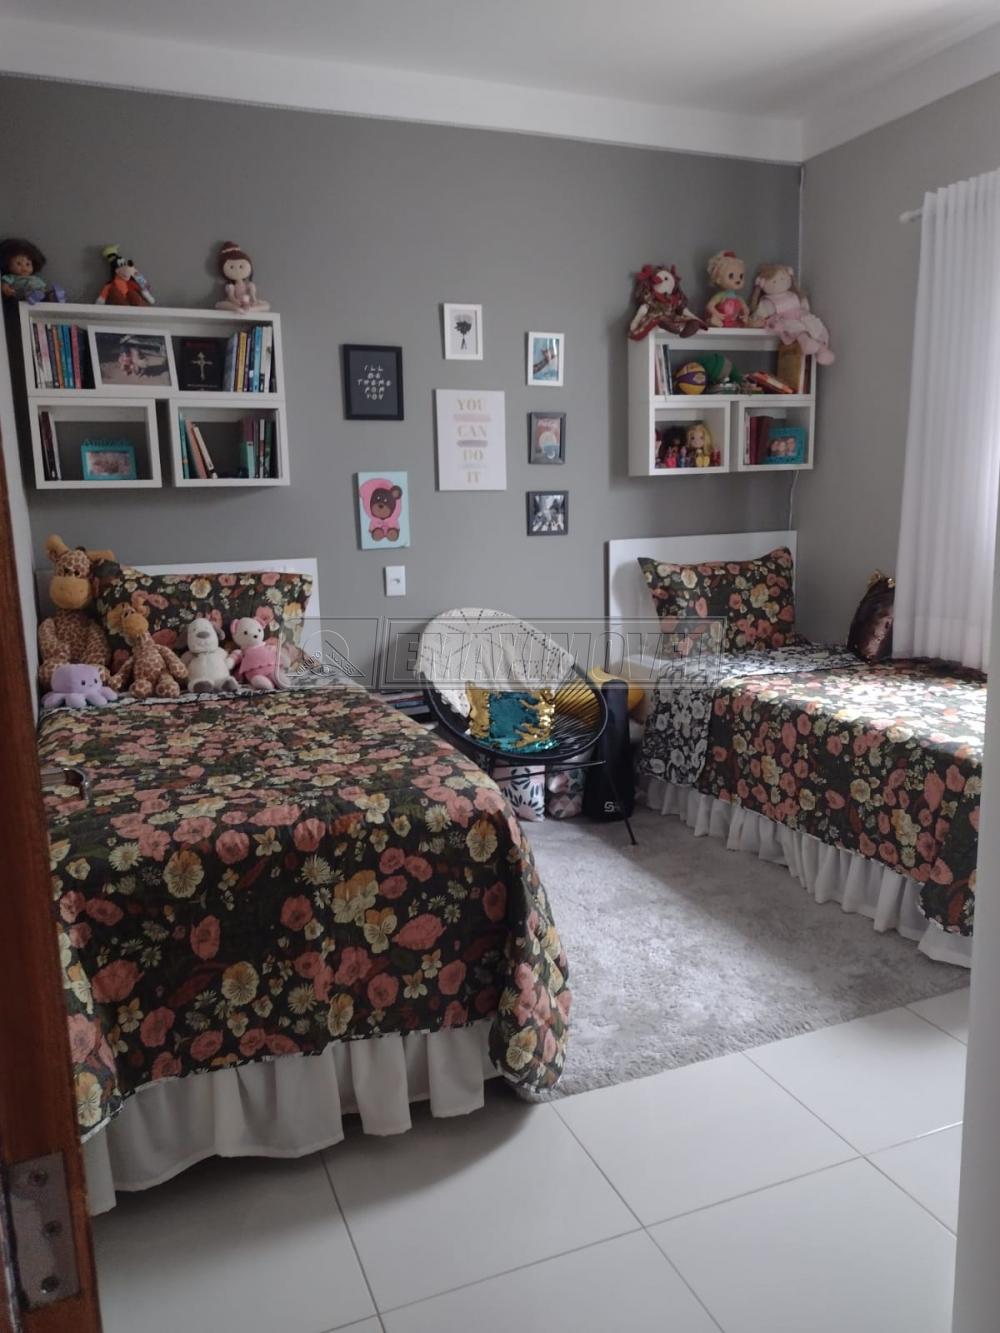 Comprar Casa / em Condomínios em Sorocaba R$ 730.000,00 - Foto 19